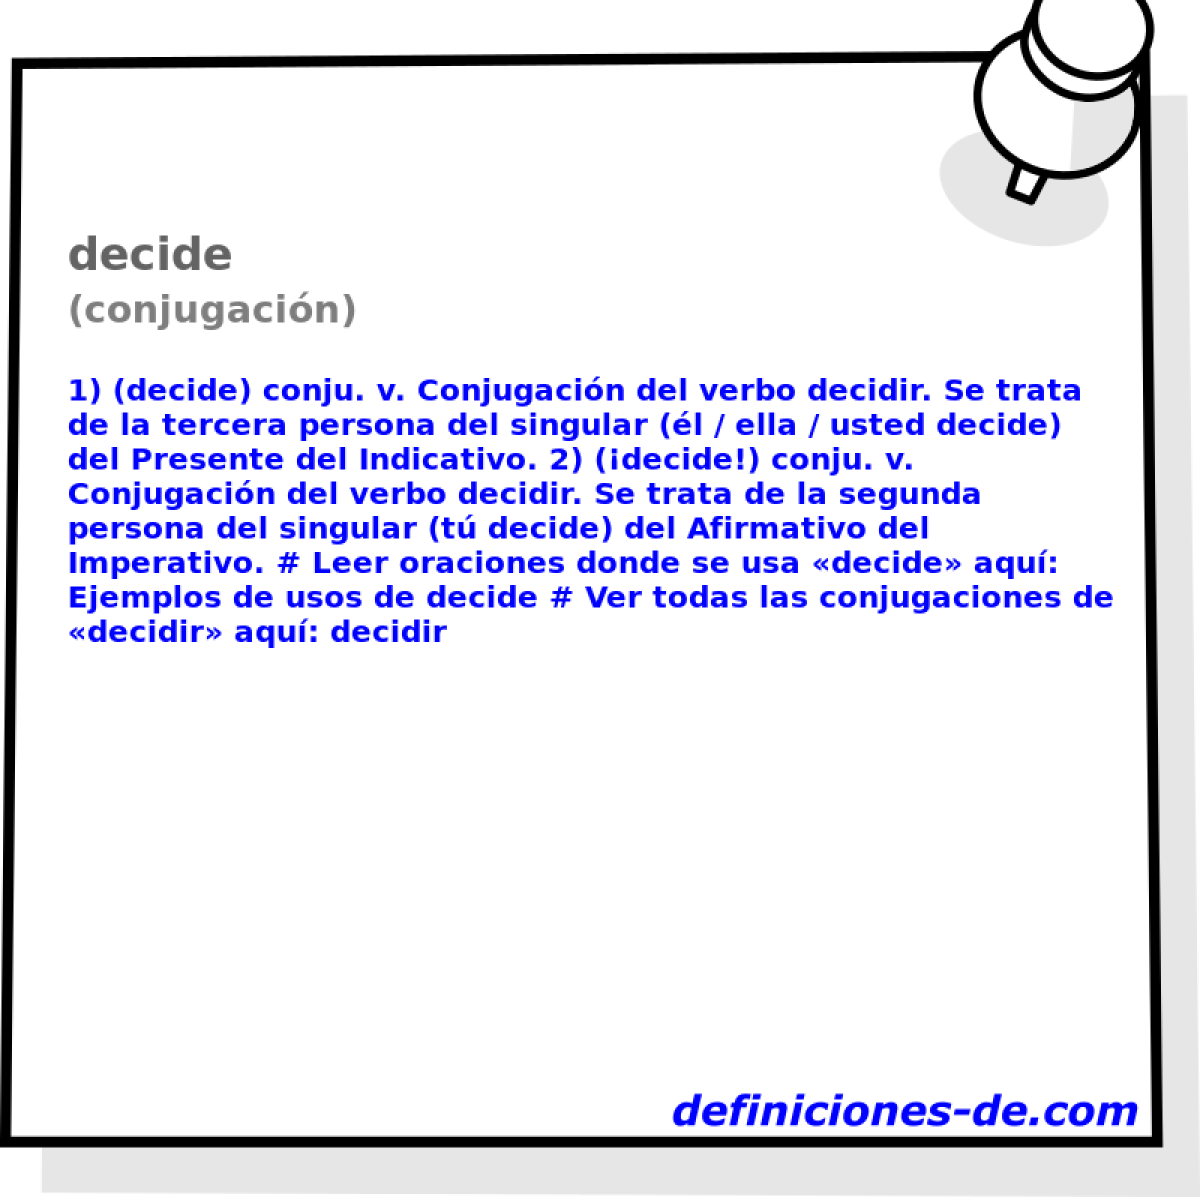 decide (conjugacin)